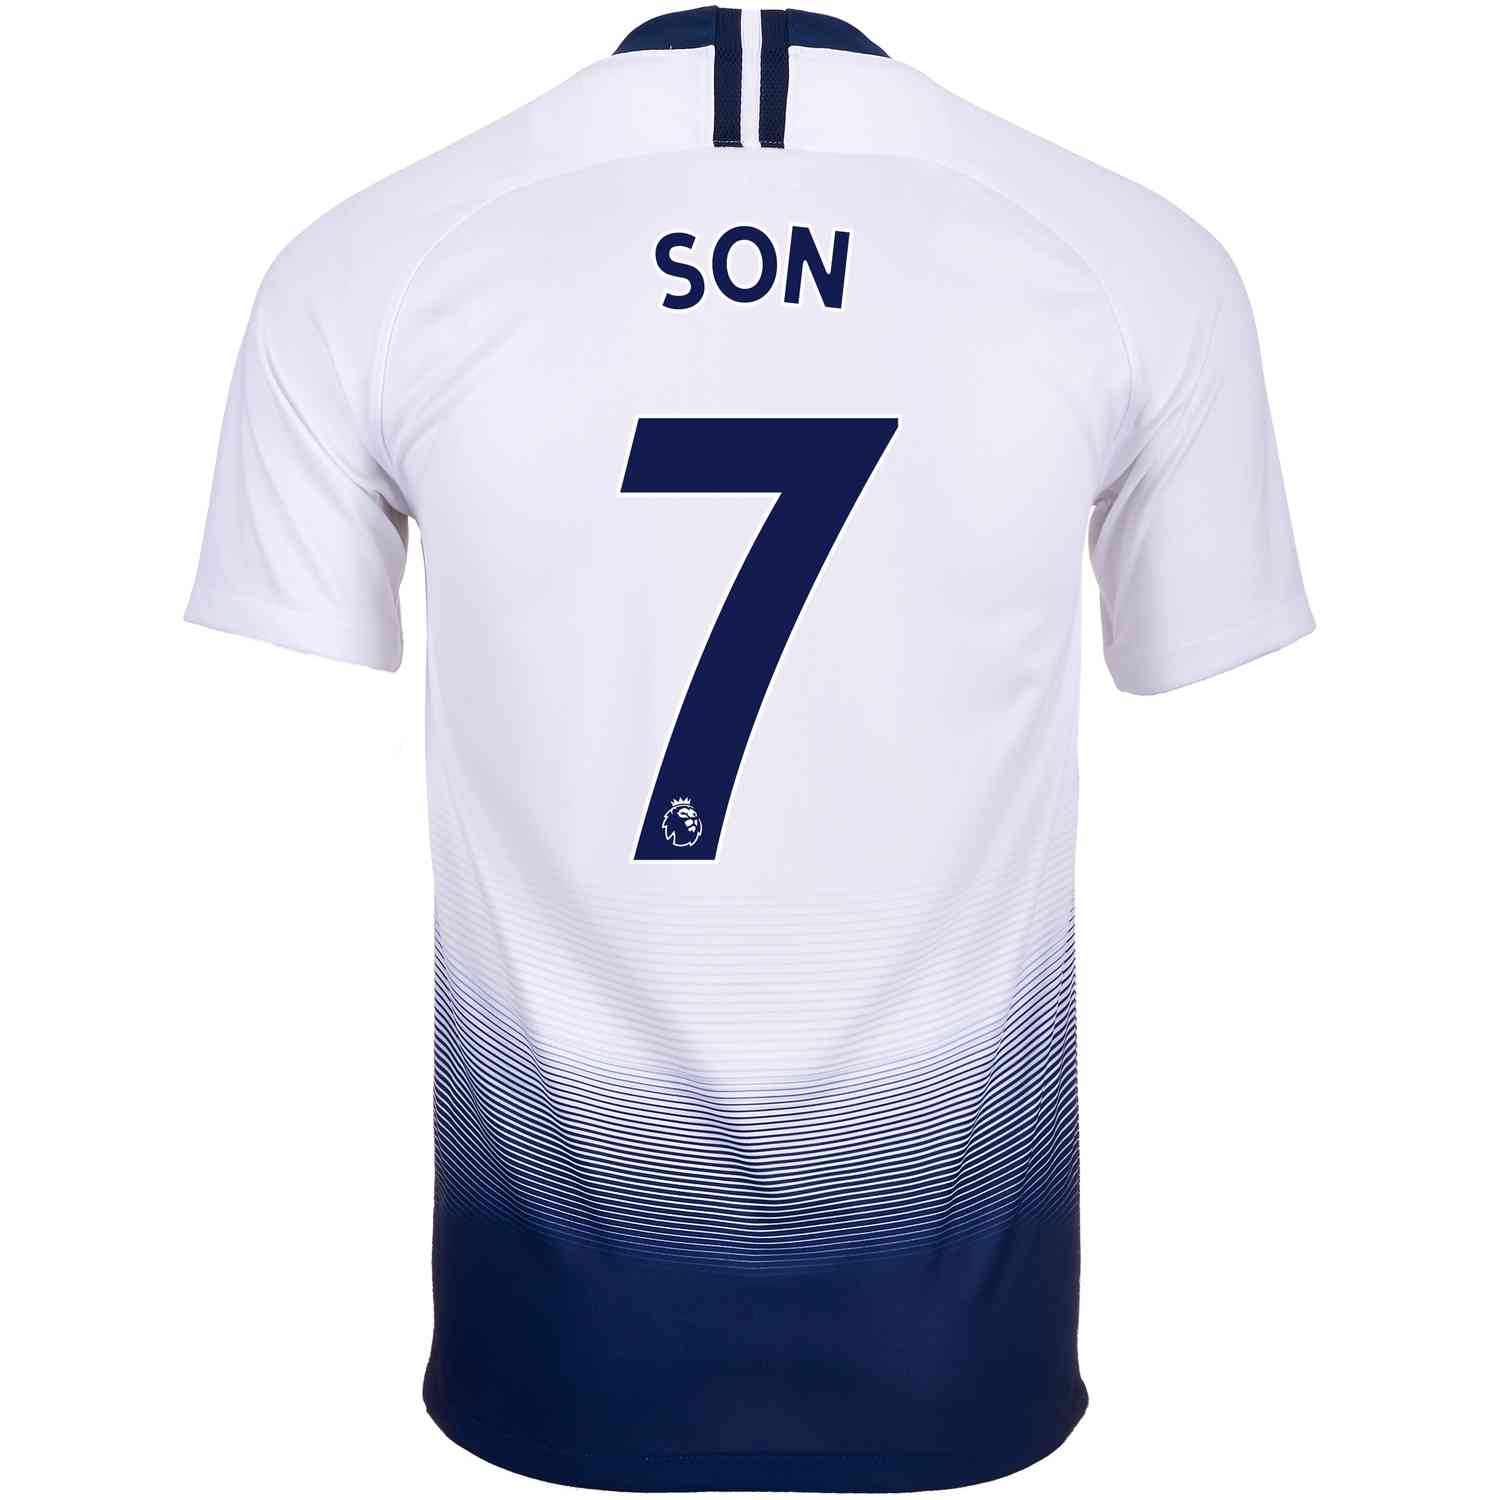 2019/20 Son Heung-min Tottenham Away Jersey - Soccer Master